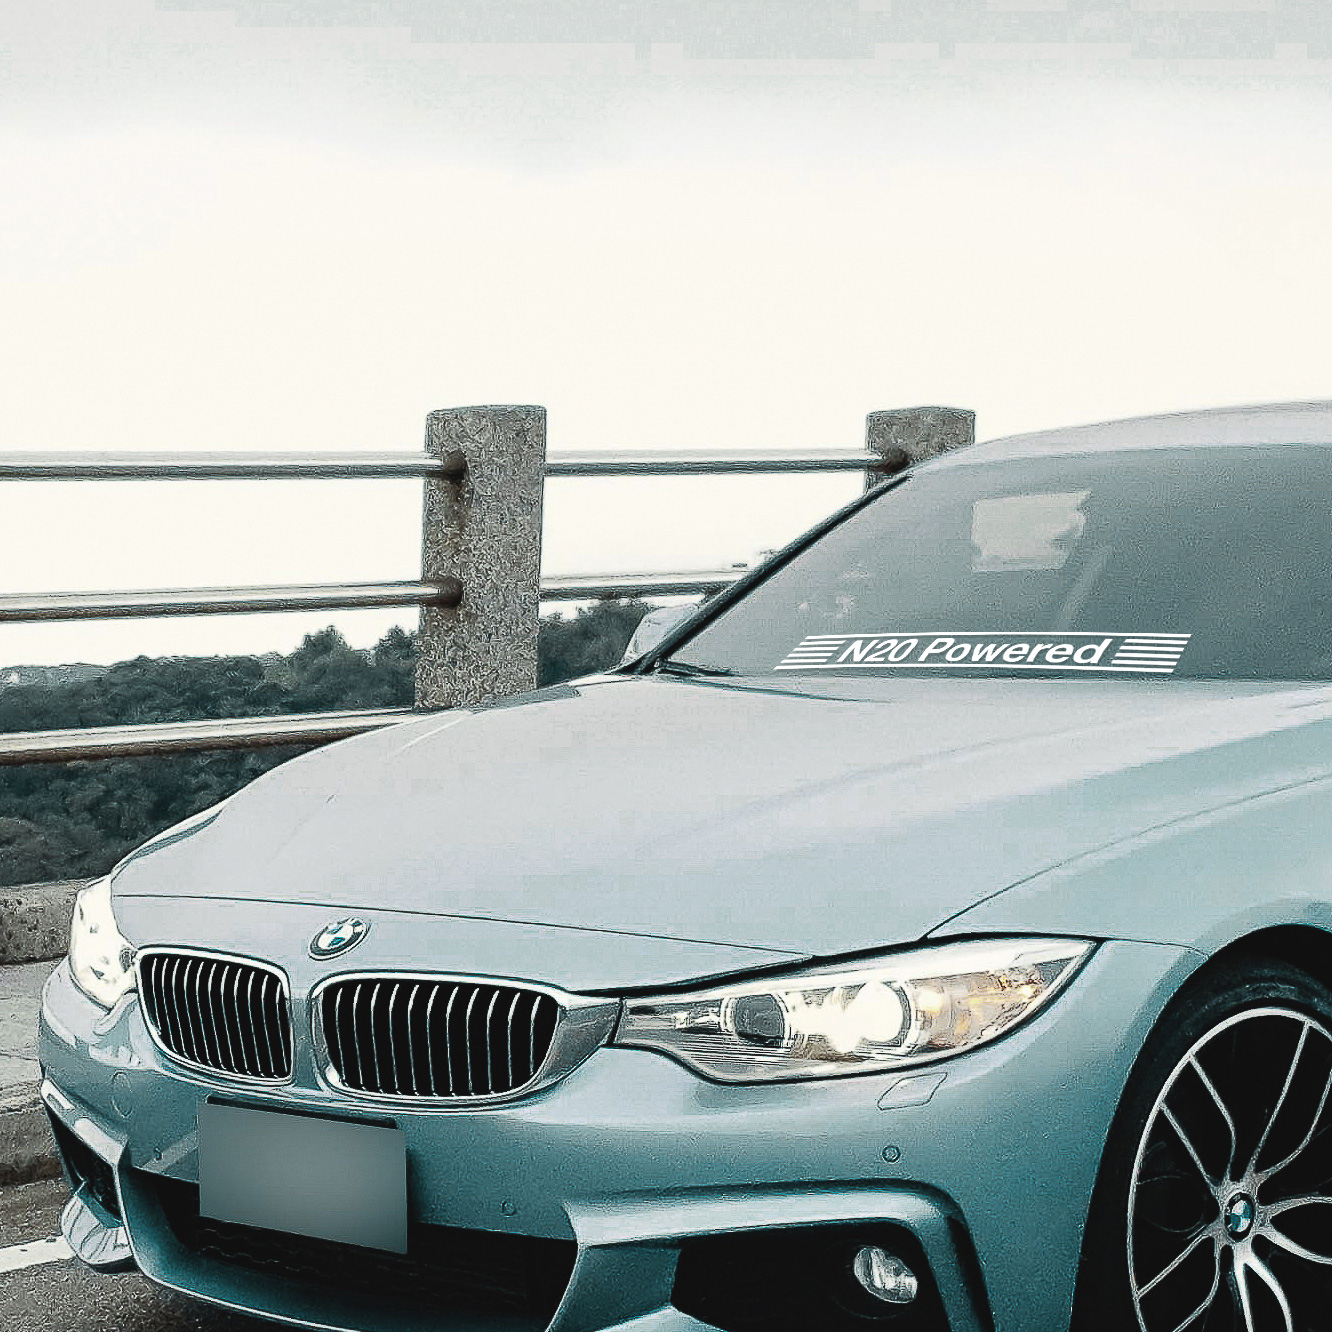 BMW Window Powered sticker for any engine